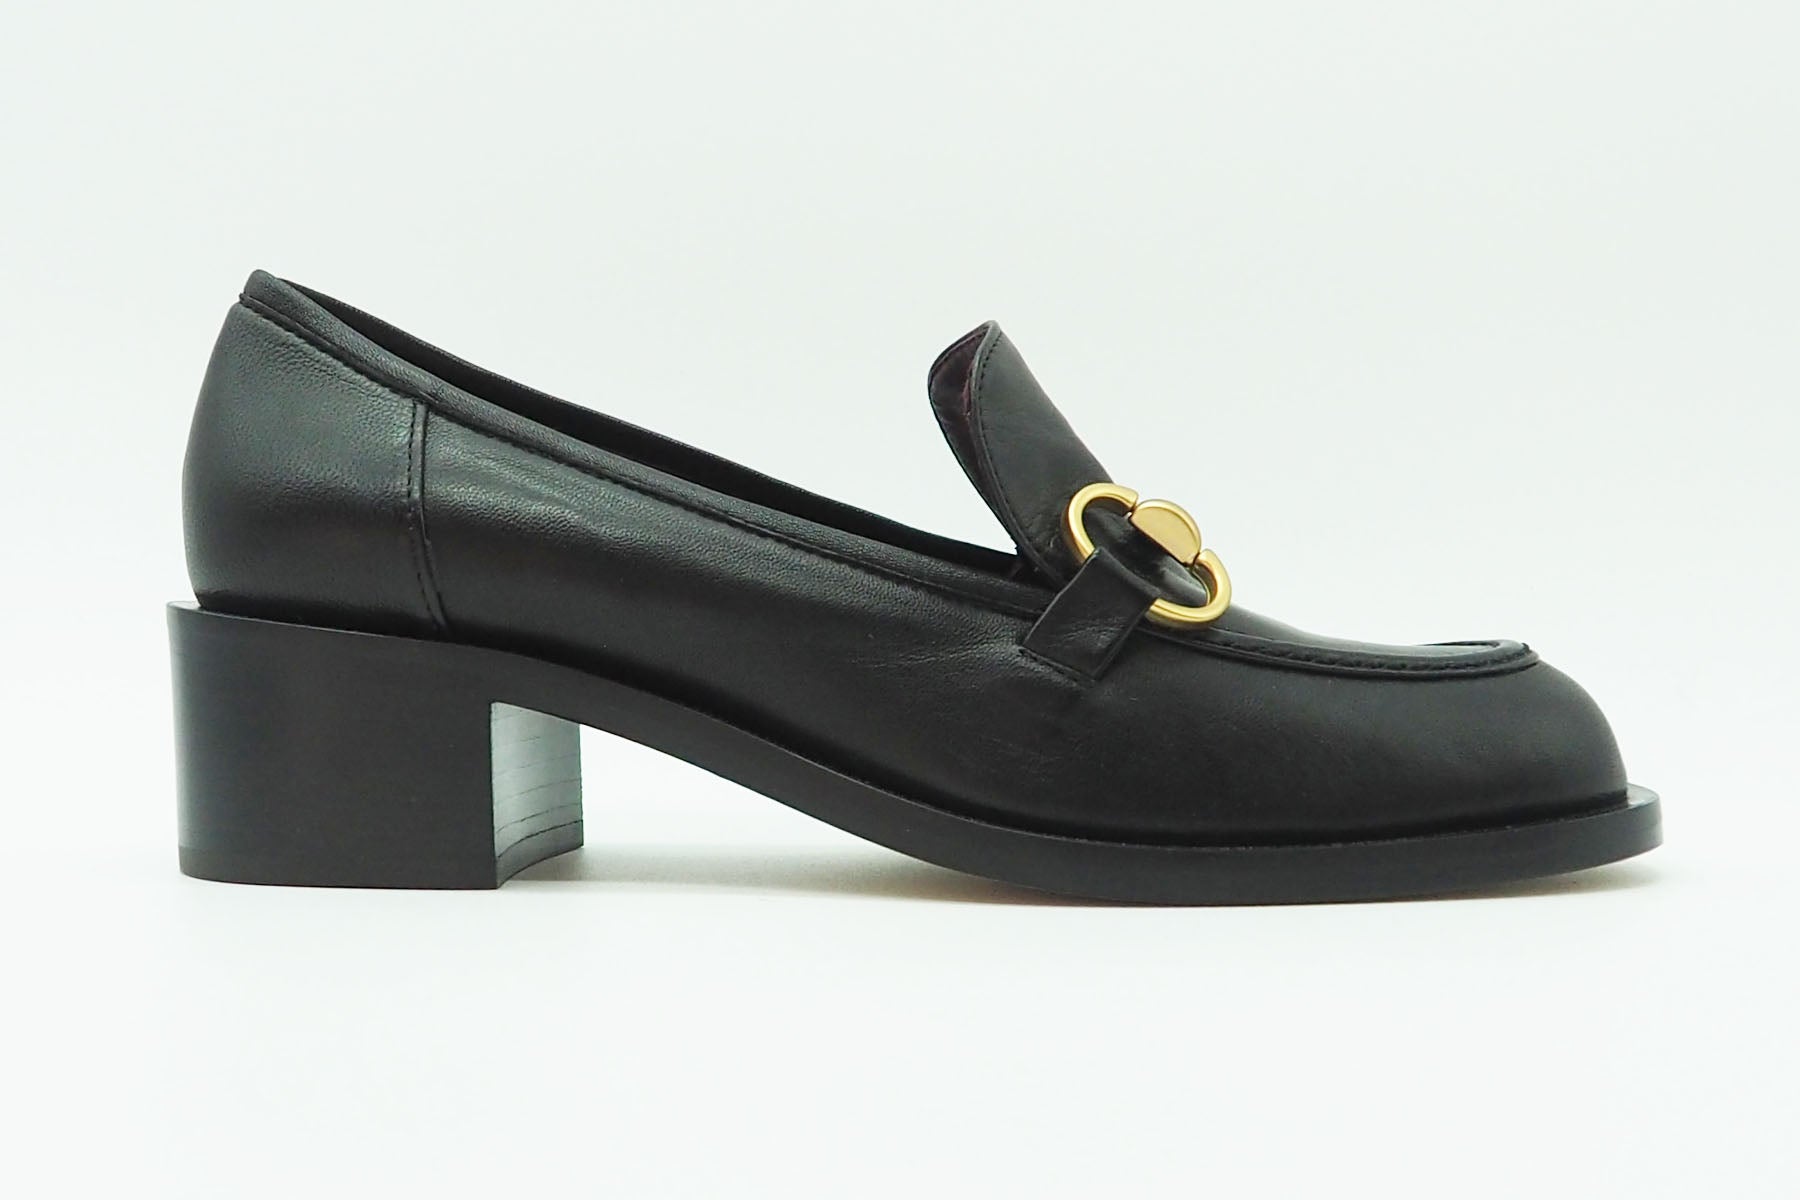 Damen Loafer aus Glattleder in Schwarz - Absatz 4cm Damen Loafers & Schnürer Pomme D'or